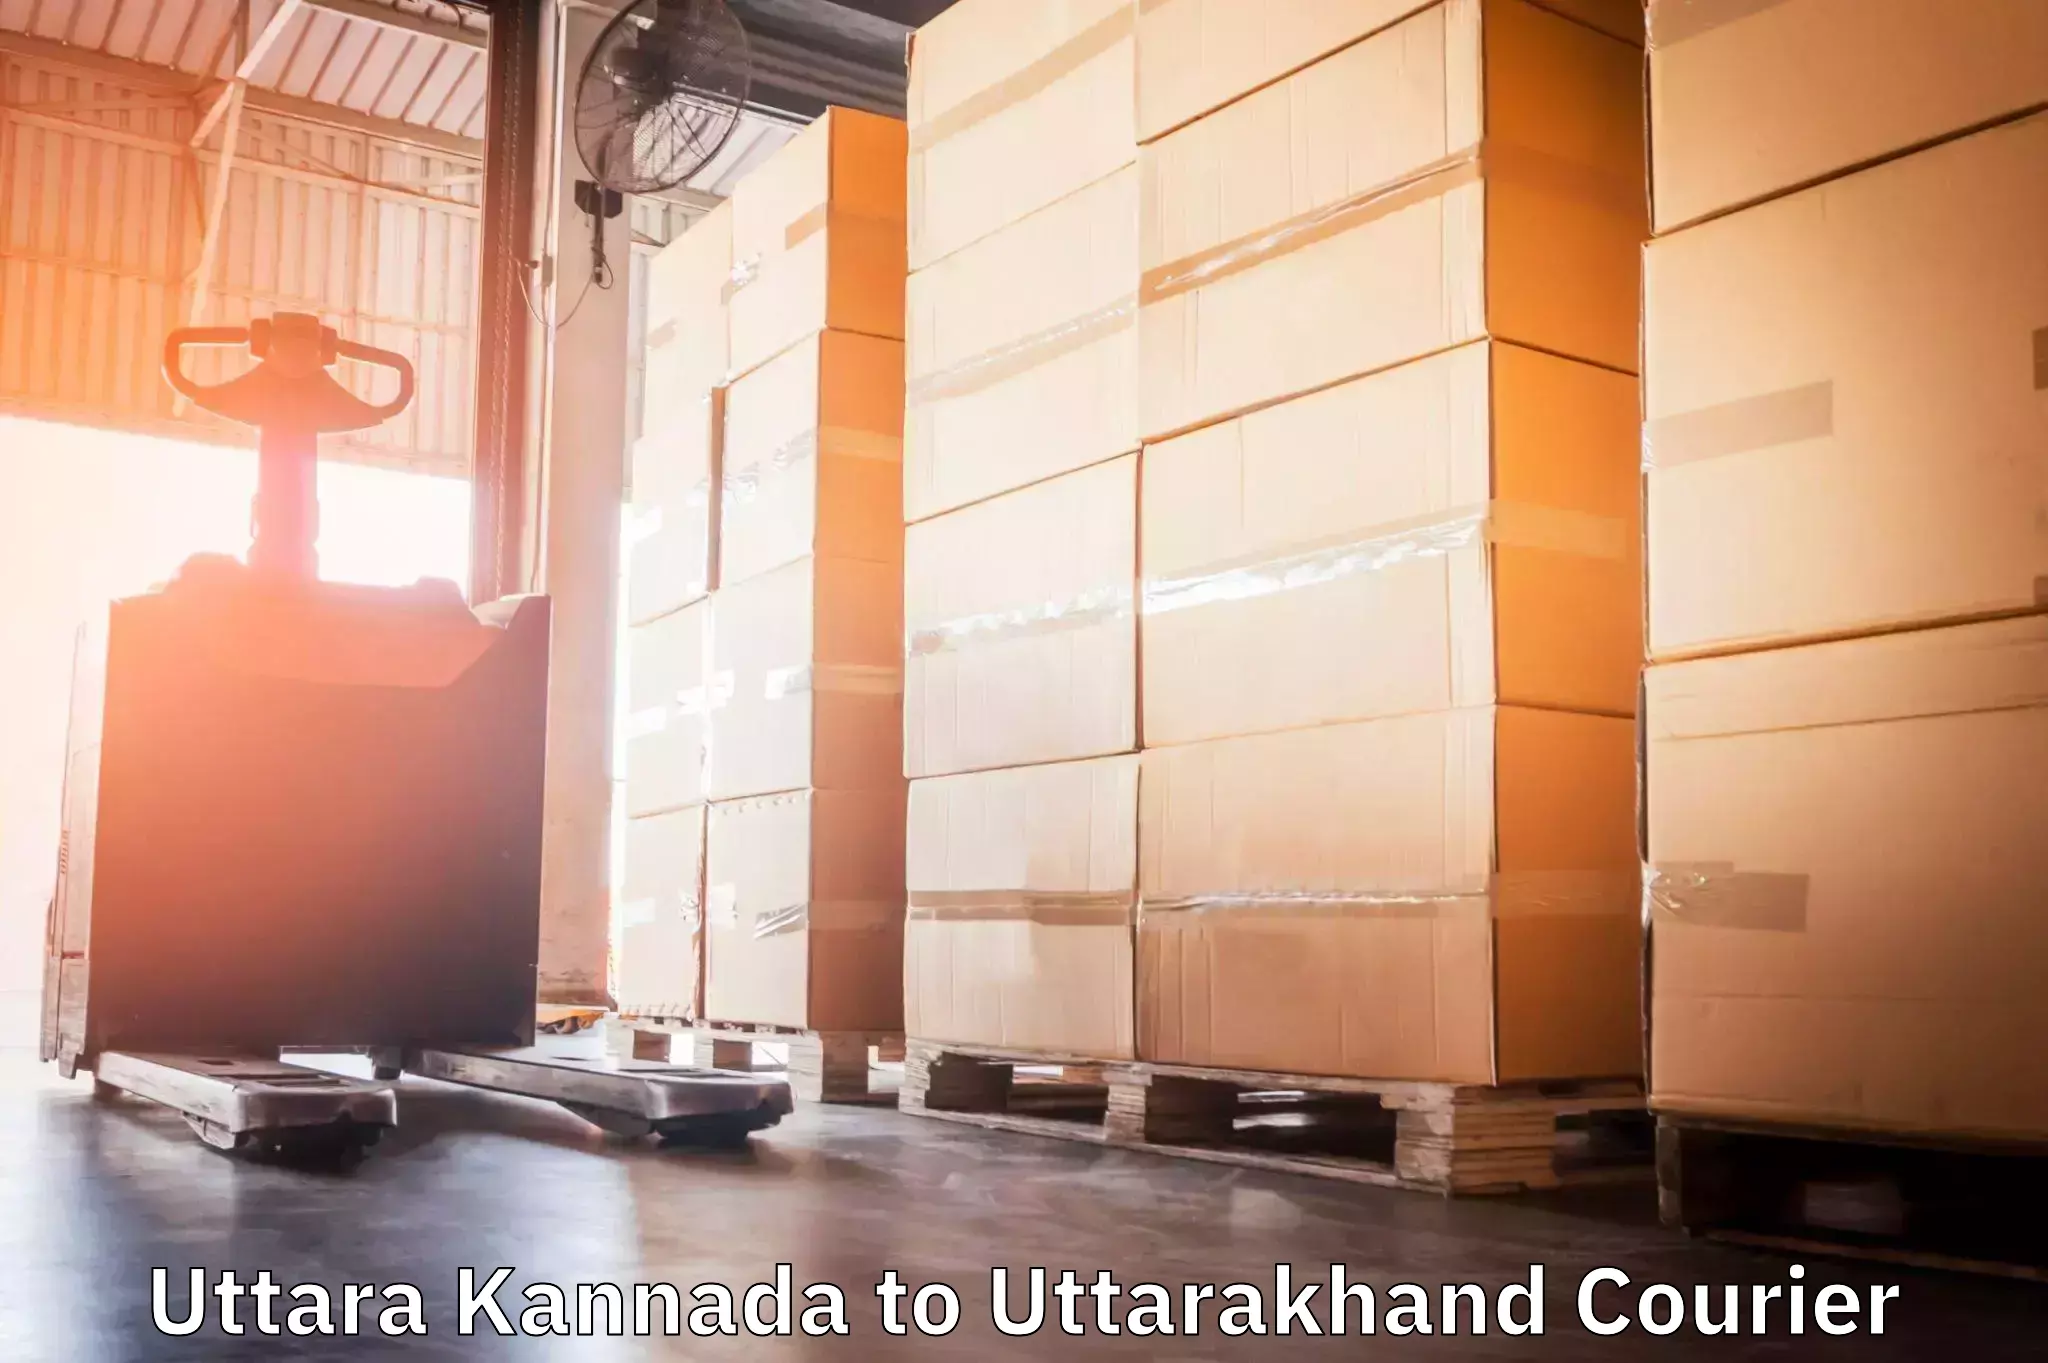 Express mail service Uttara Kannada to Rudraprayag